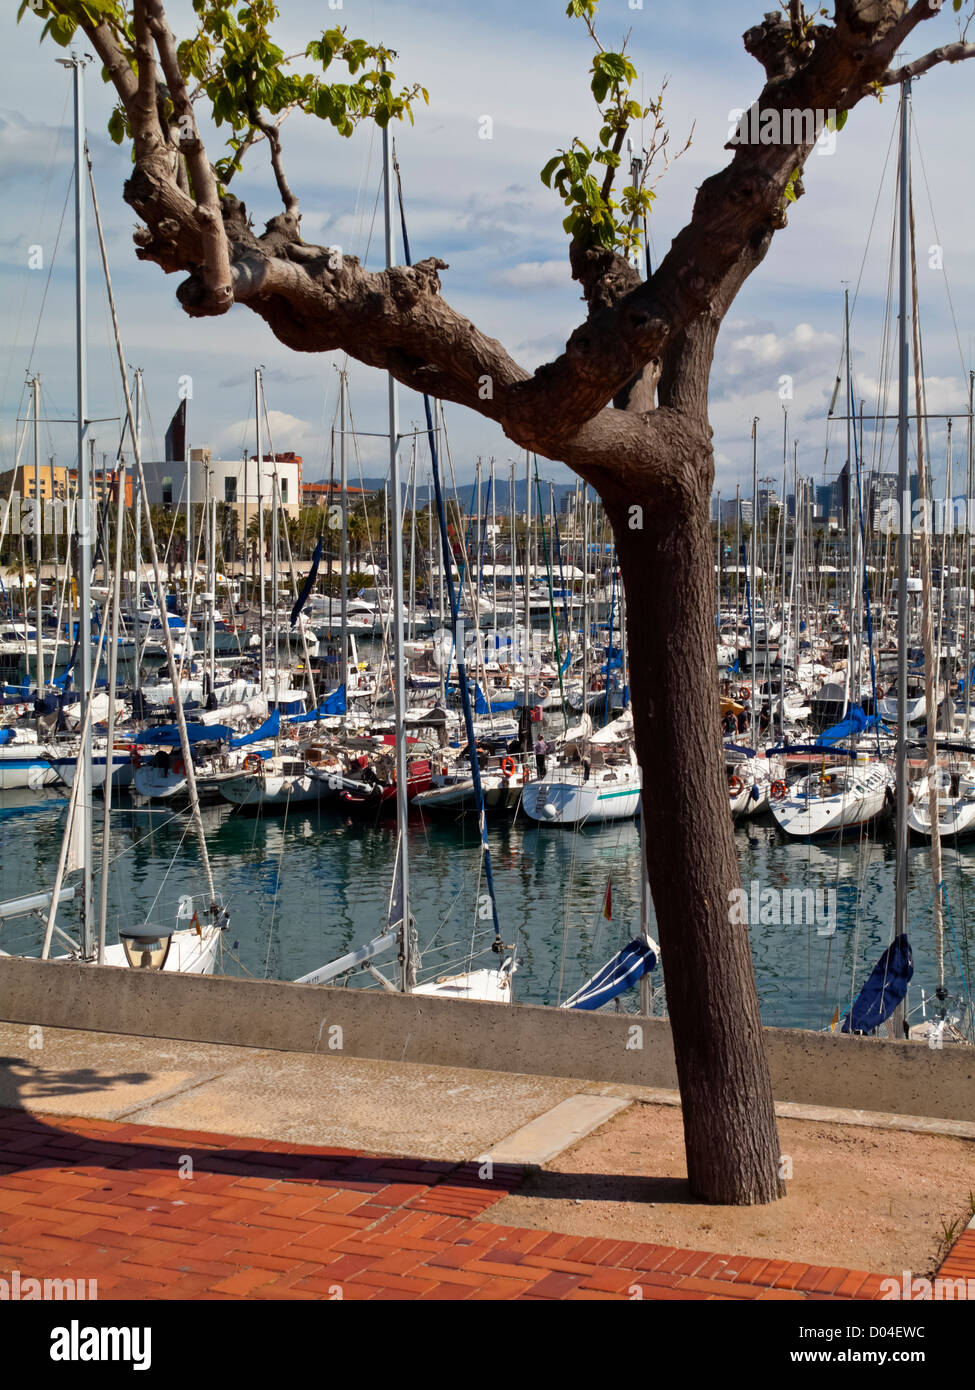 Bateaux dans le port de Port Olimpic Barceloneta Barcelona La Catalogne Espagne qui a été largement reconstruite pour les Jeux Olympiques de 1992 Banque D'Images